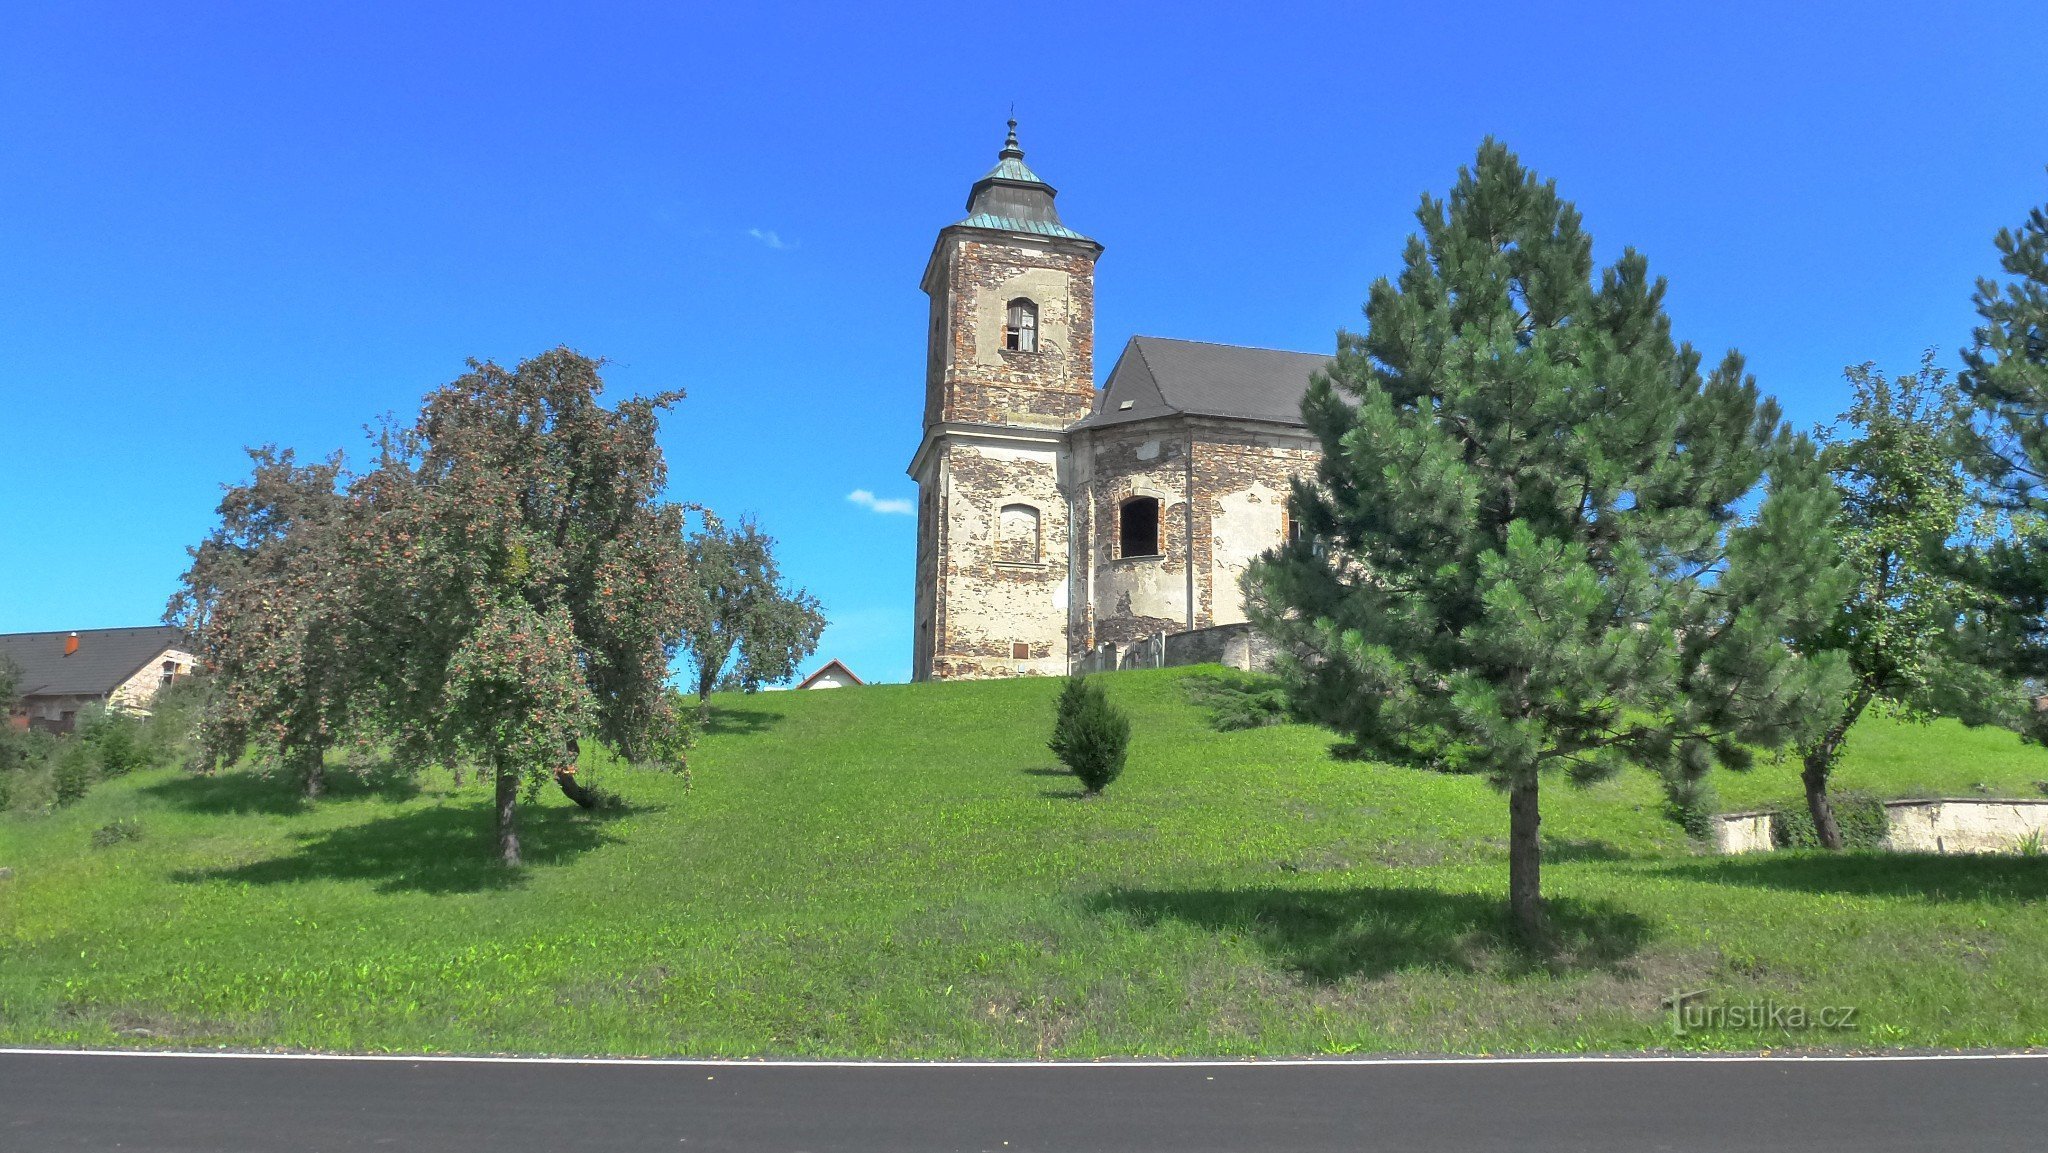 Đặc điểm nổi bật của làng là nhà thờ có từ năm 1738, ngôi nhà bằng gỗ nguyên bản được nhắc đến sớm nhất là năm 1352